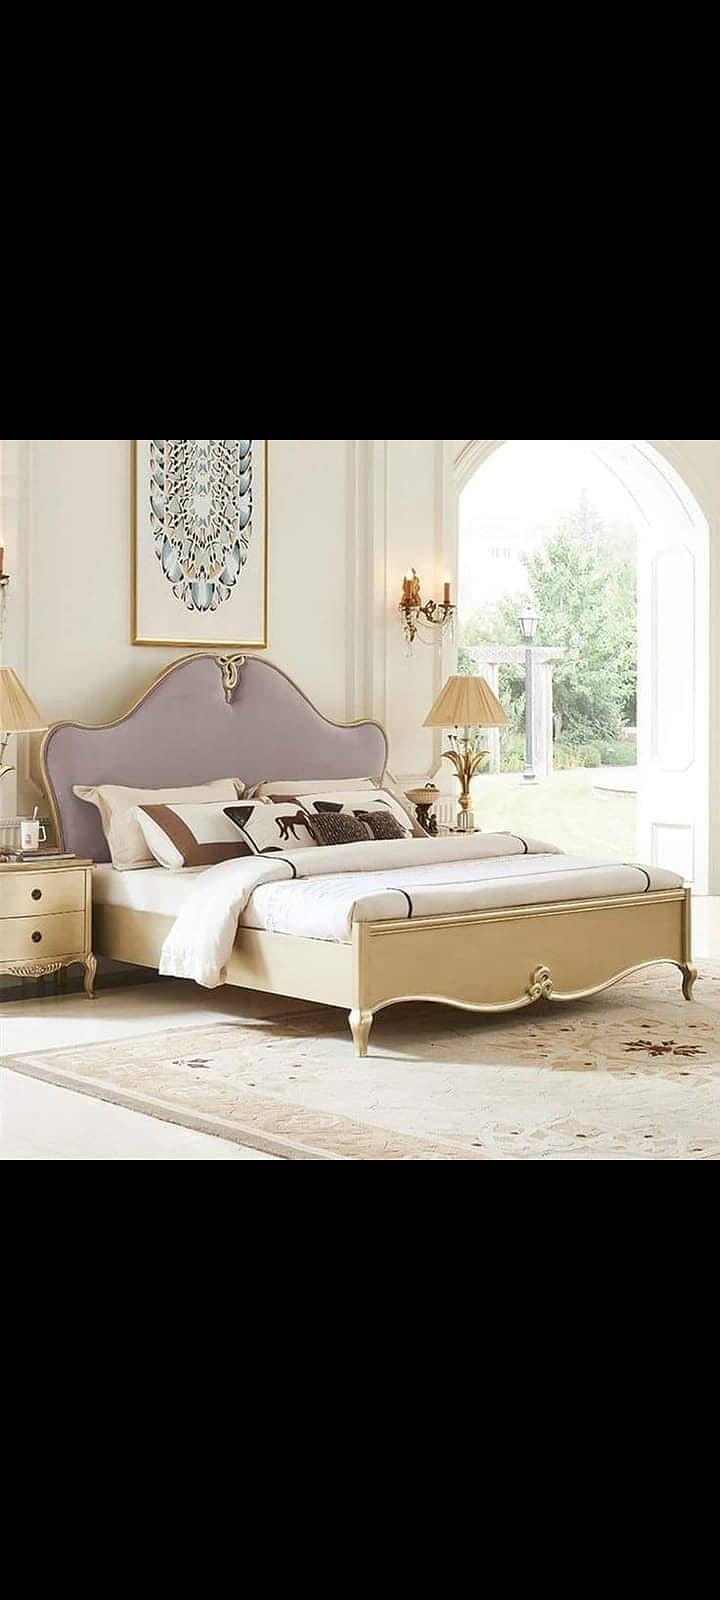 New Modern Furniture set for sale | Bed set | Bedroom set in karachi 9